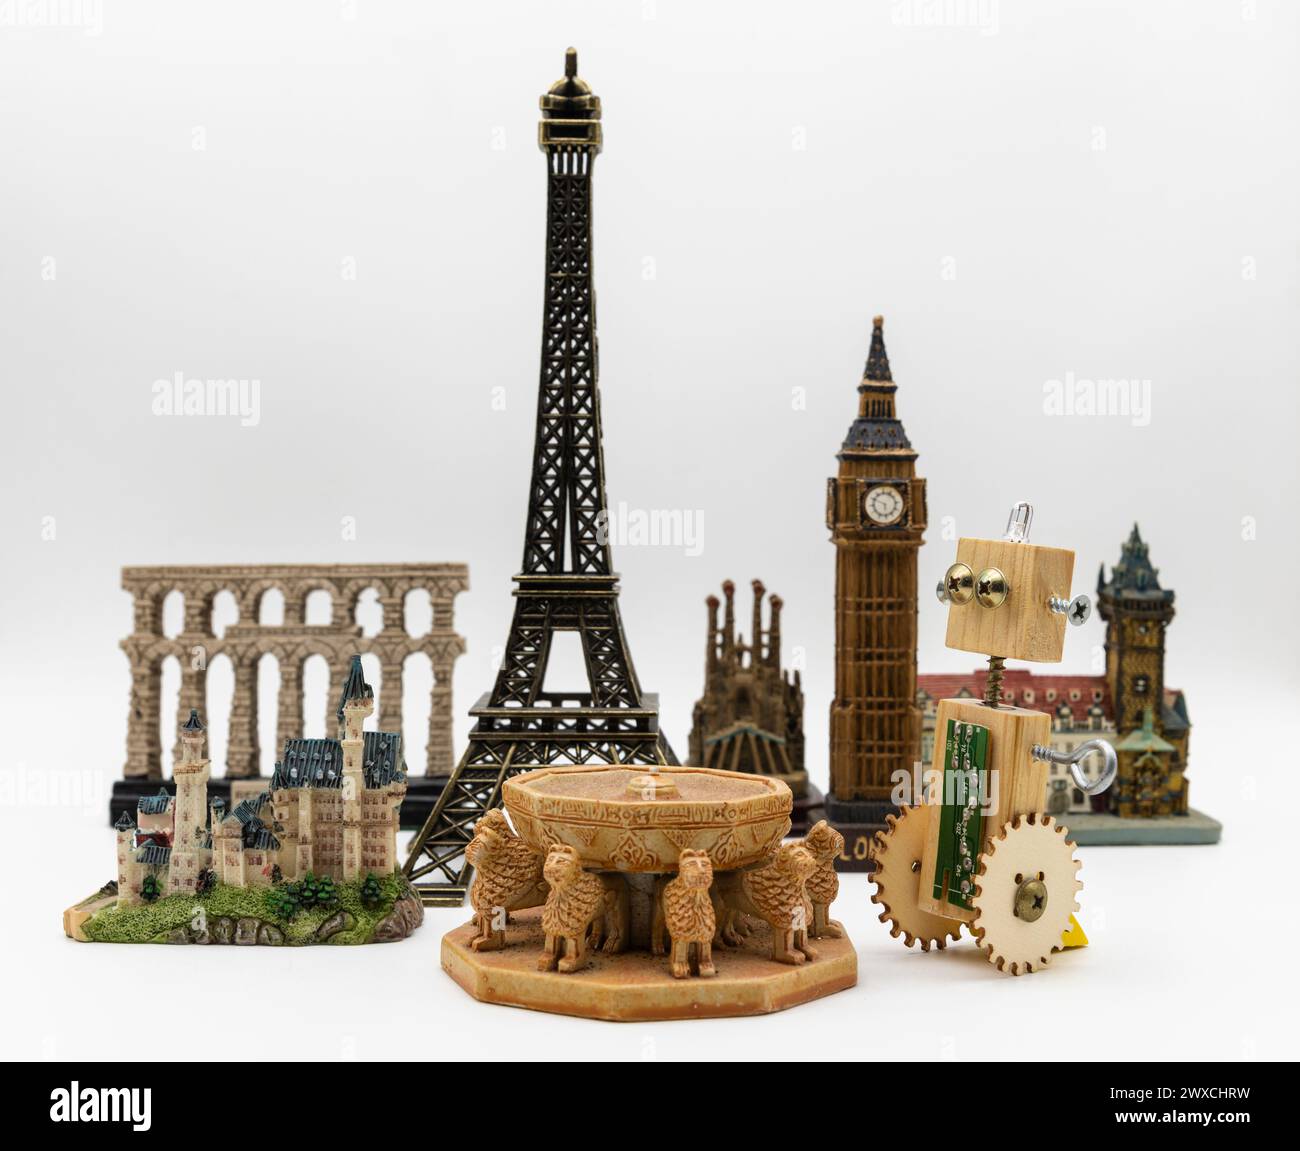 Robot artesano de madera junto a varios monumentos del mundo como la torre Eiffel, patio de los Leones de la Alhambra o el Big Ben Stock Photo